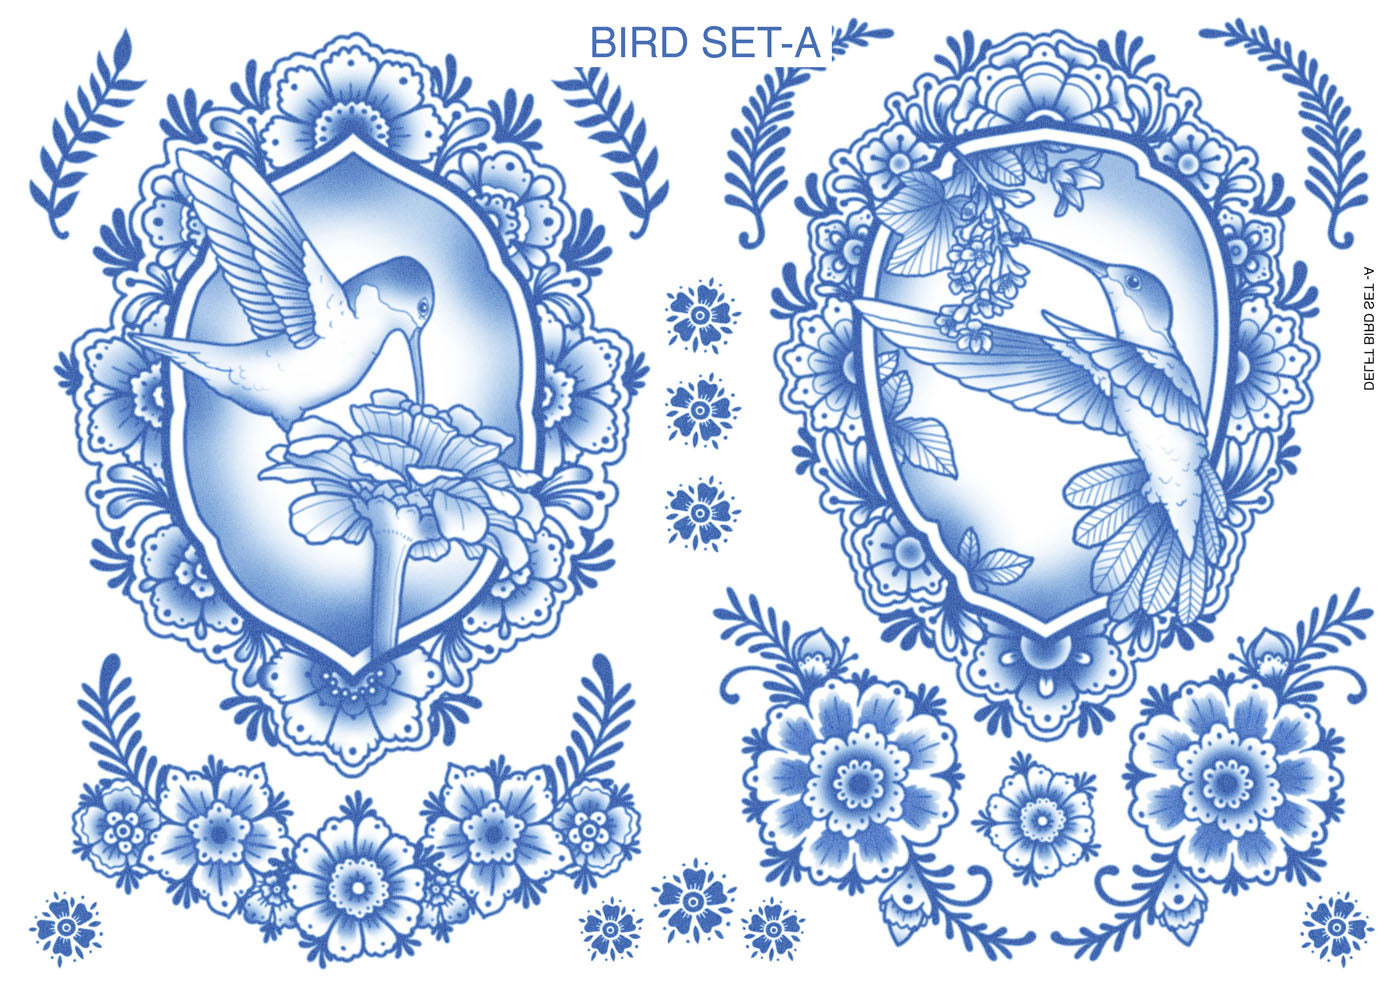 Delft Birds & Flowers Tattoo Set -A